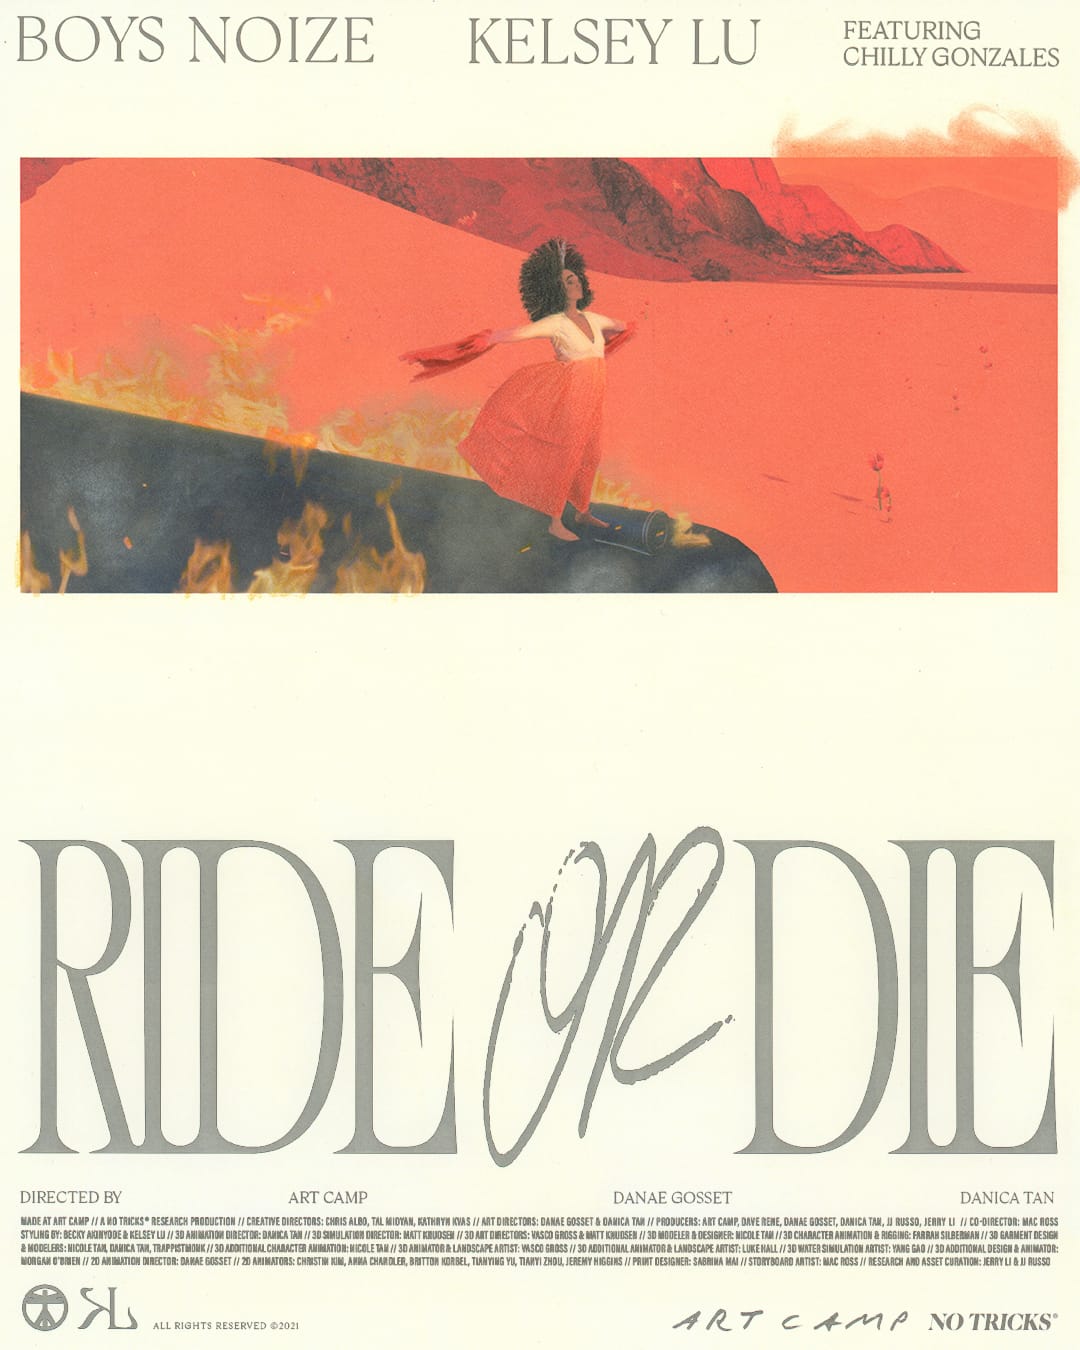 Affiche promotionnelle aux allures de film pour Ride or Die